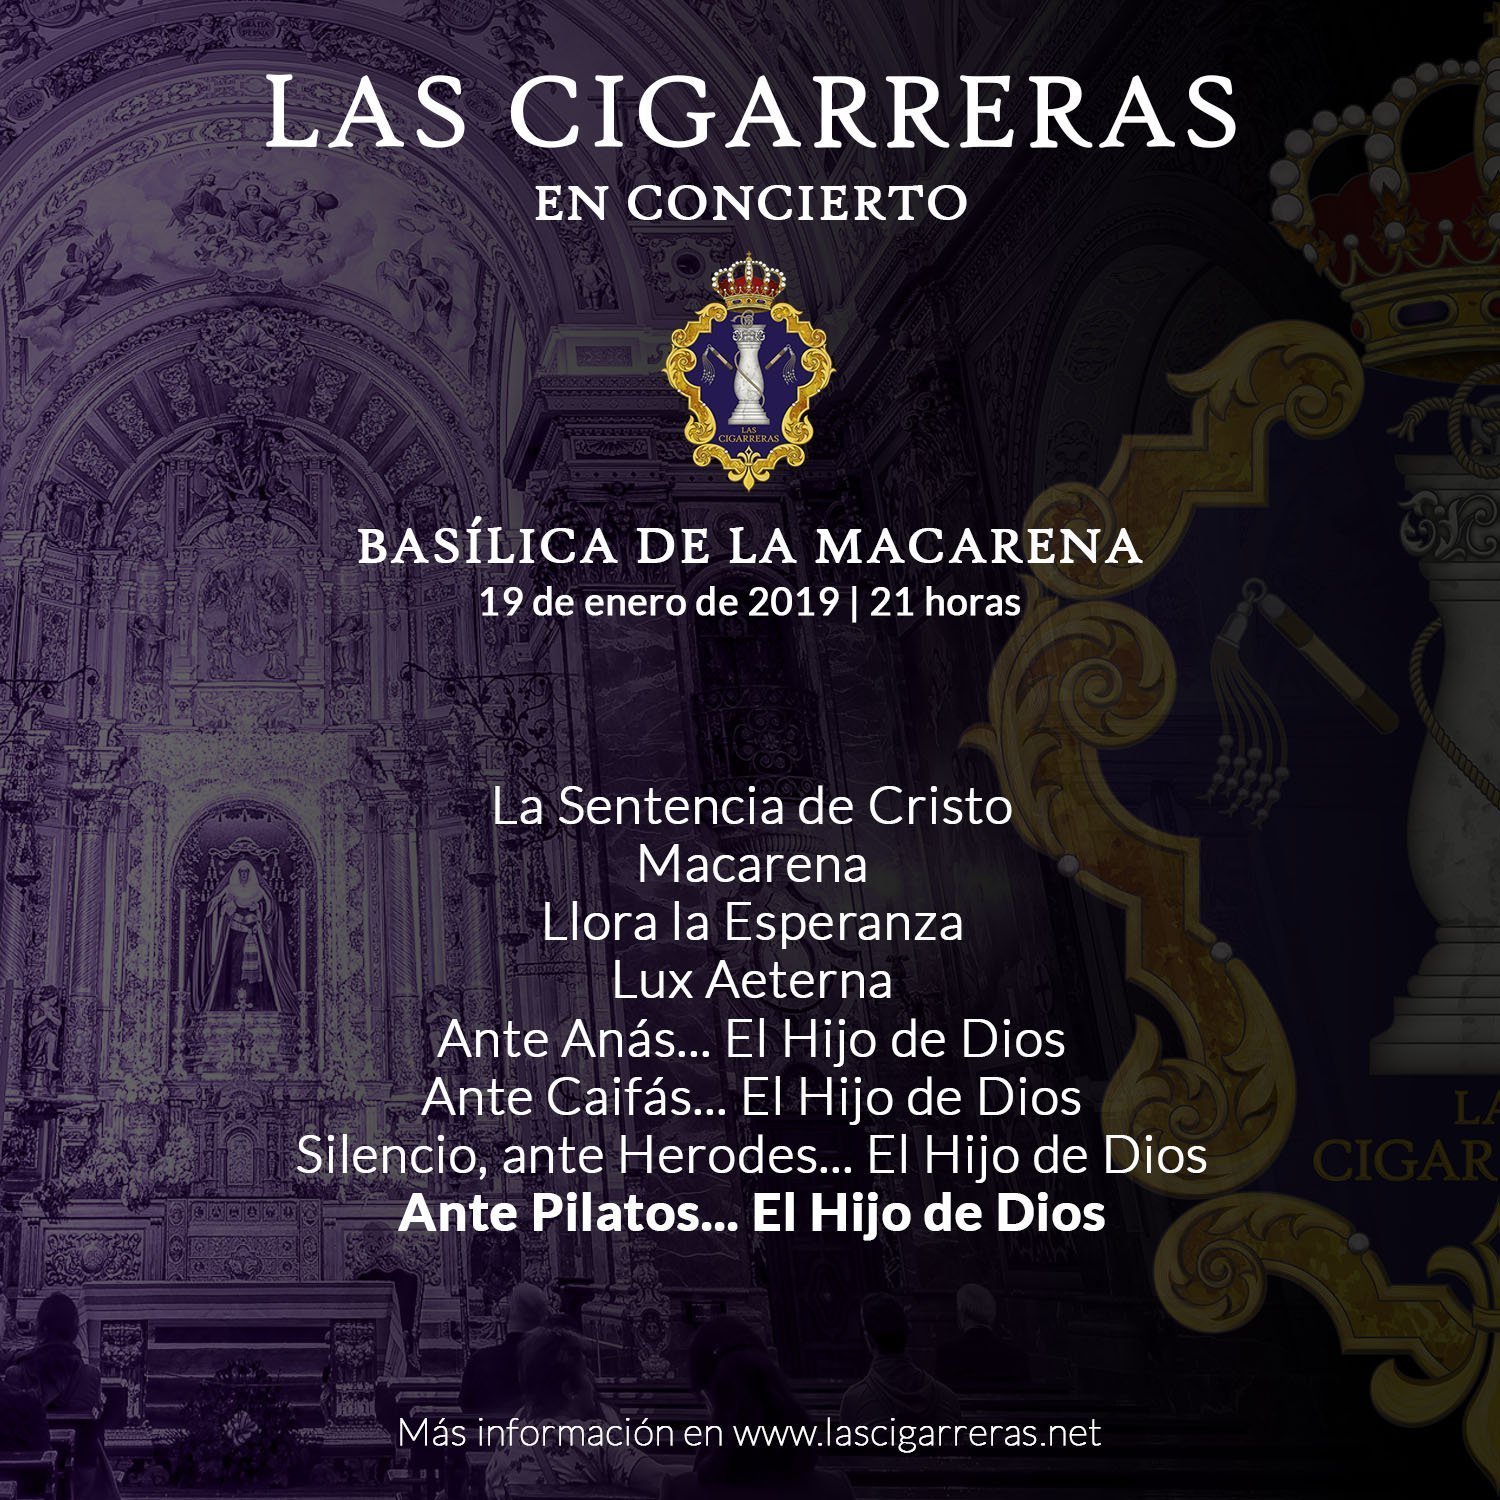 Repertorio del concierto en la Basílica de la Macarena 2019